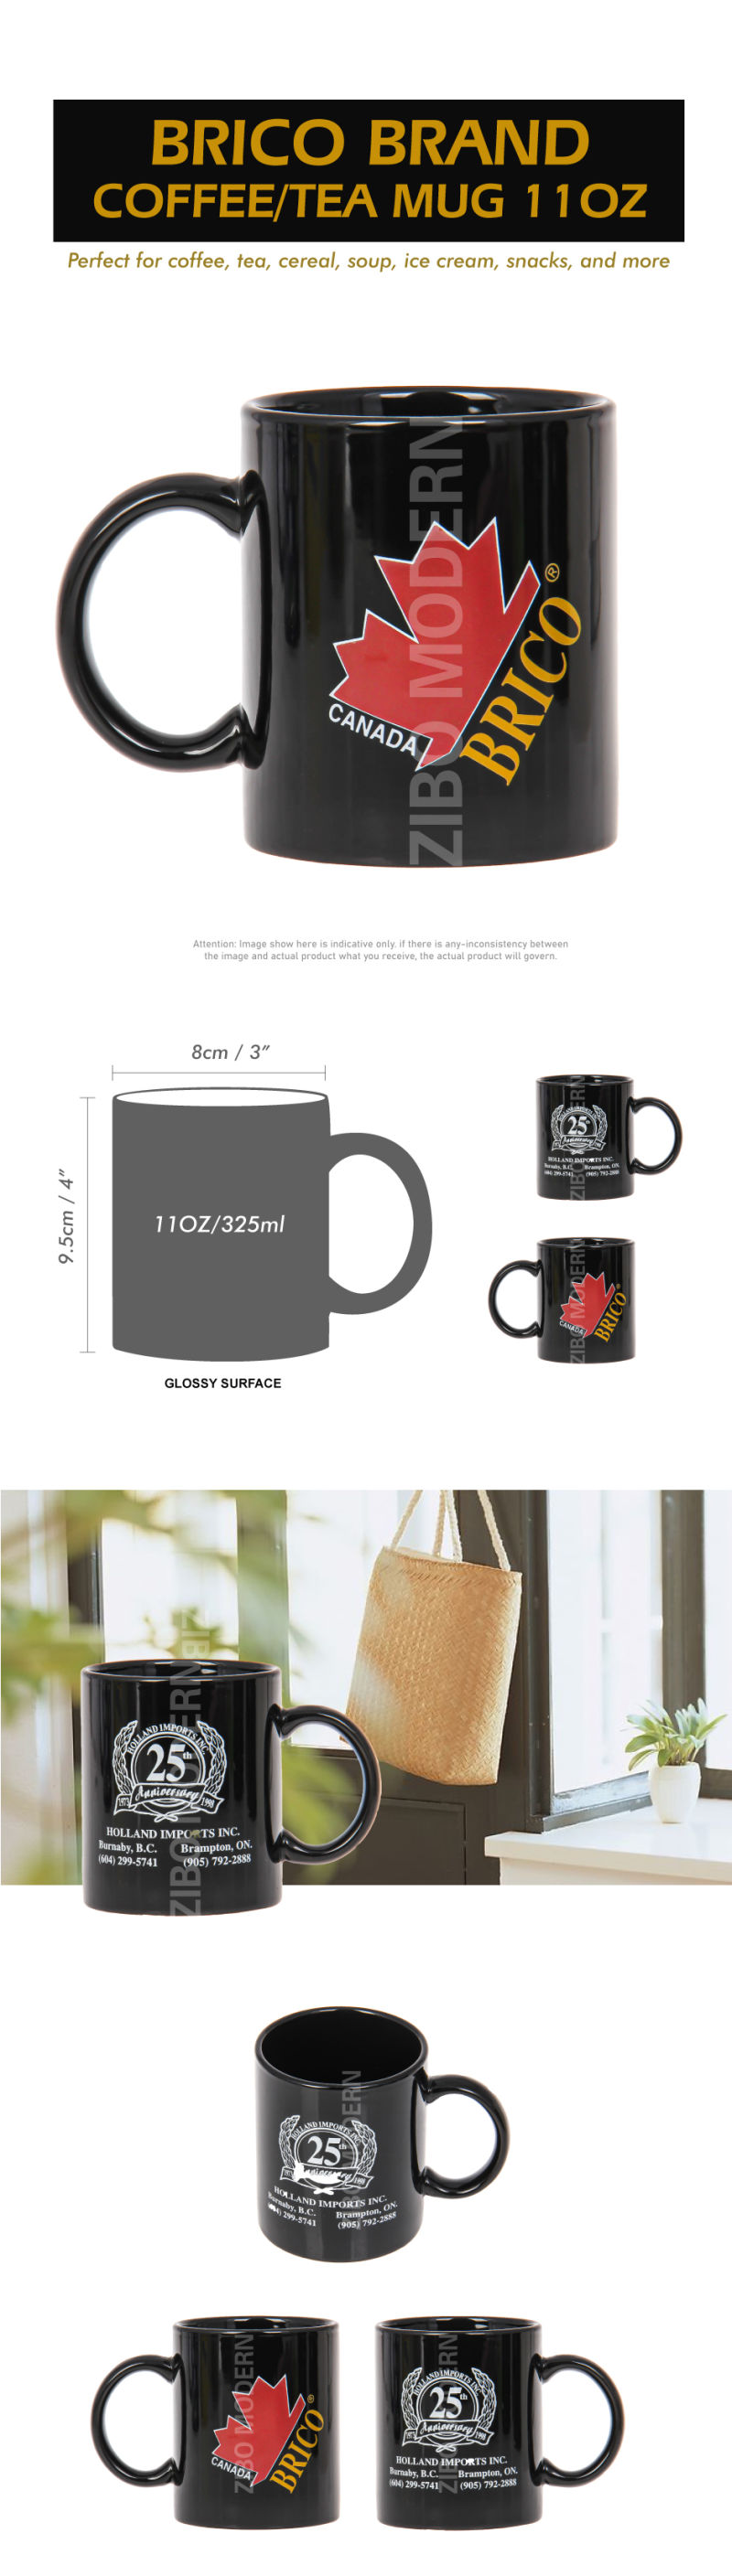 11 Oz Brico Brand Customized Multicolor Ceramic Coffee / Tea Mug - Ceramic Mug - Porcelain Mugs